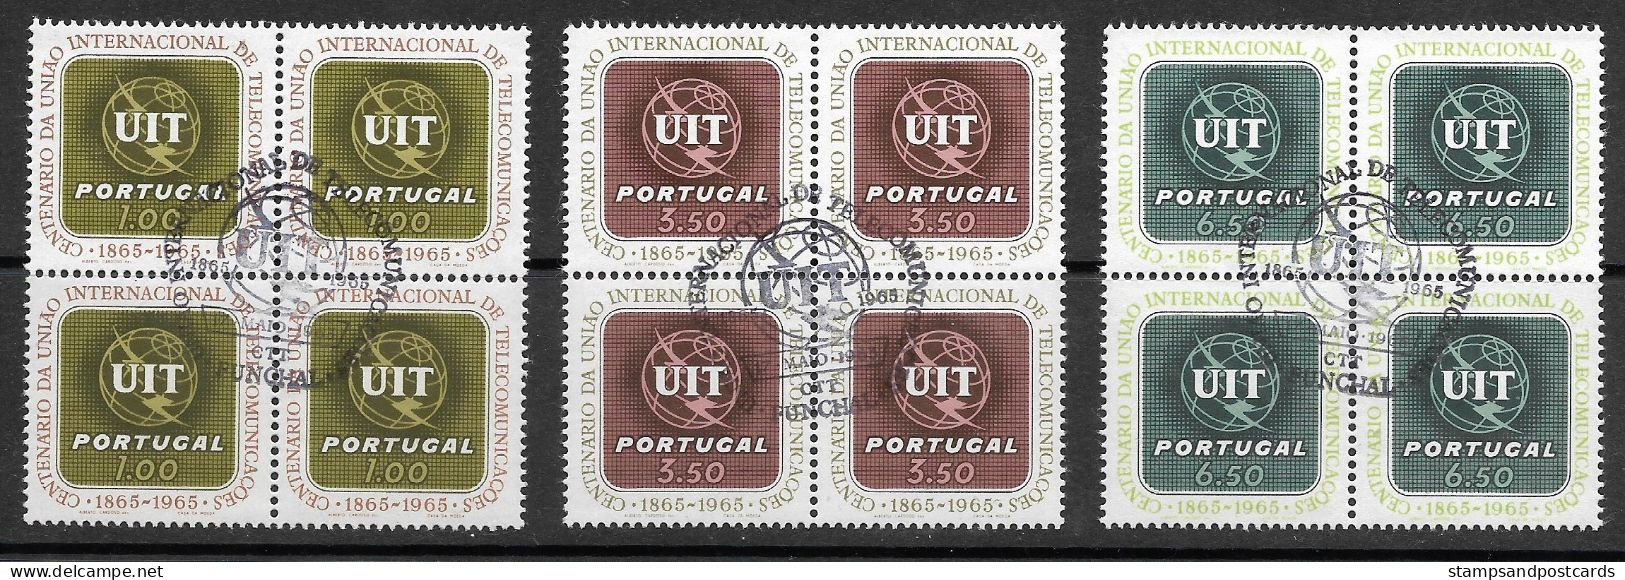 Portugal 1965 Centenaire Union Internationale Télécommunications UIT X 4 Cachet Premier Jour Funchal Madeira Madère - Oblitérés